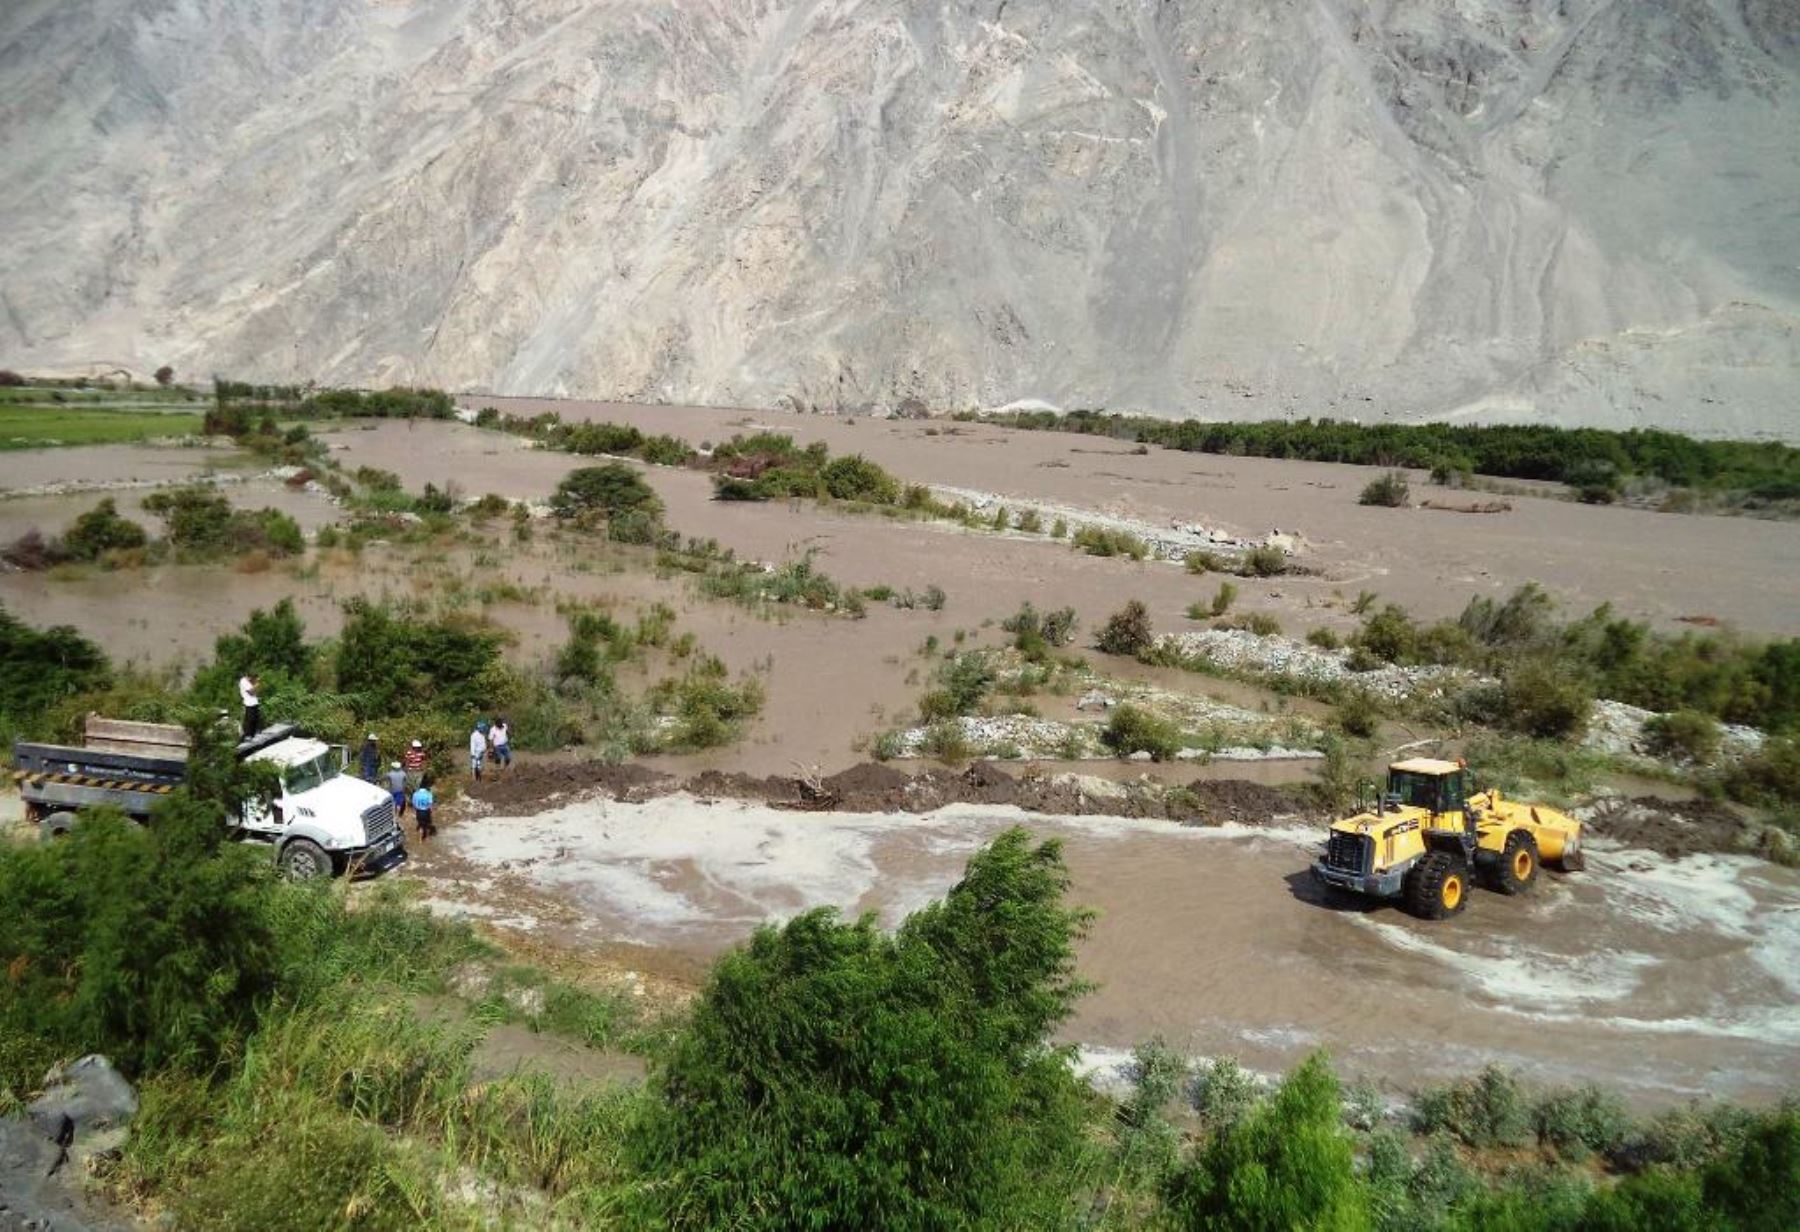 El río Ocoña, en Arequipa, registra un peligroso incremento de nivel que podría afectar a diversos centros poblados, advierte el Senamhi. ANDINA/archivo